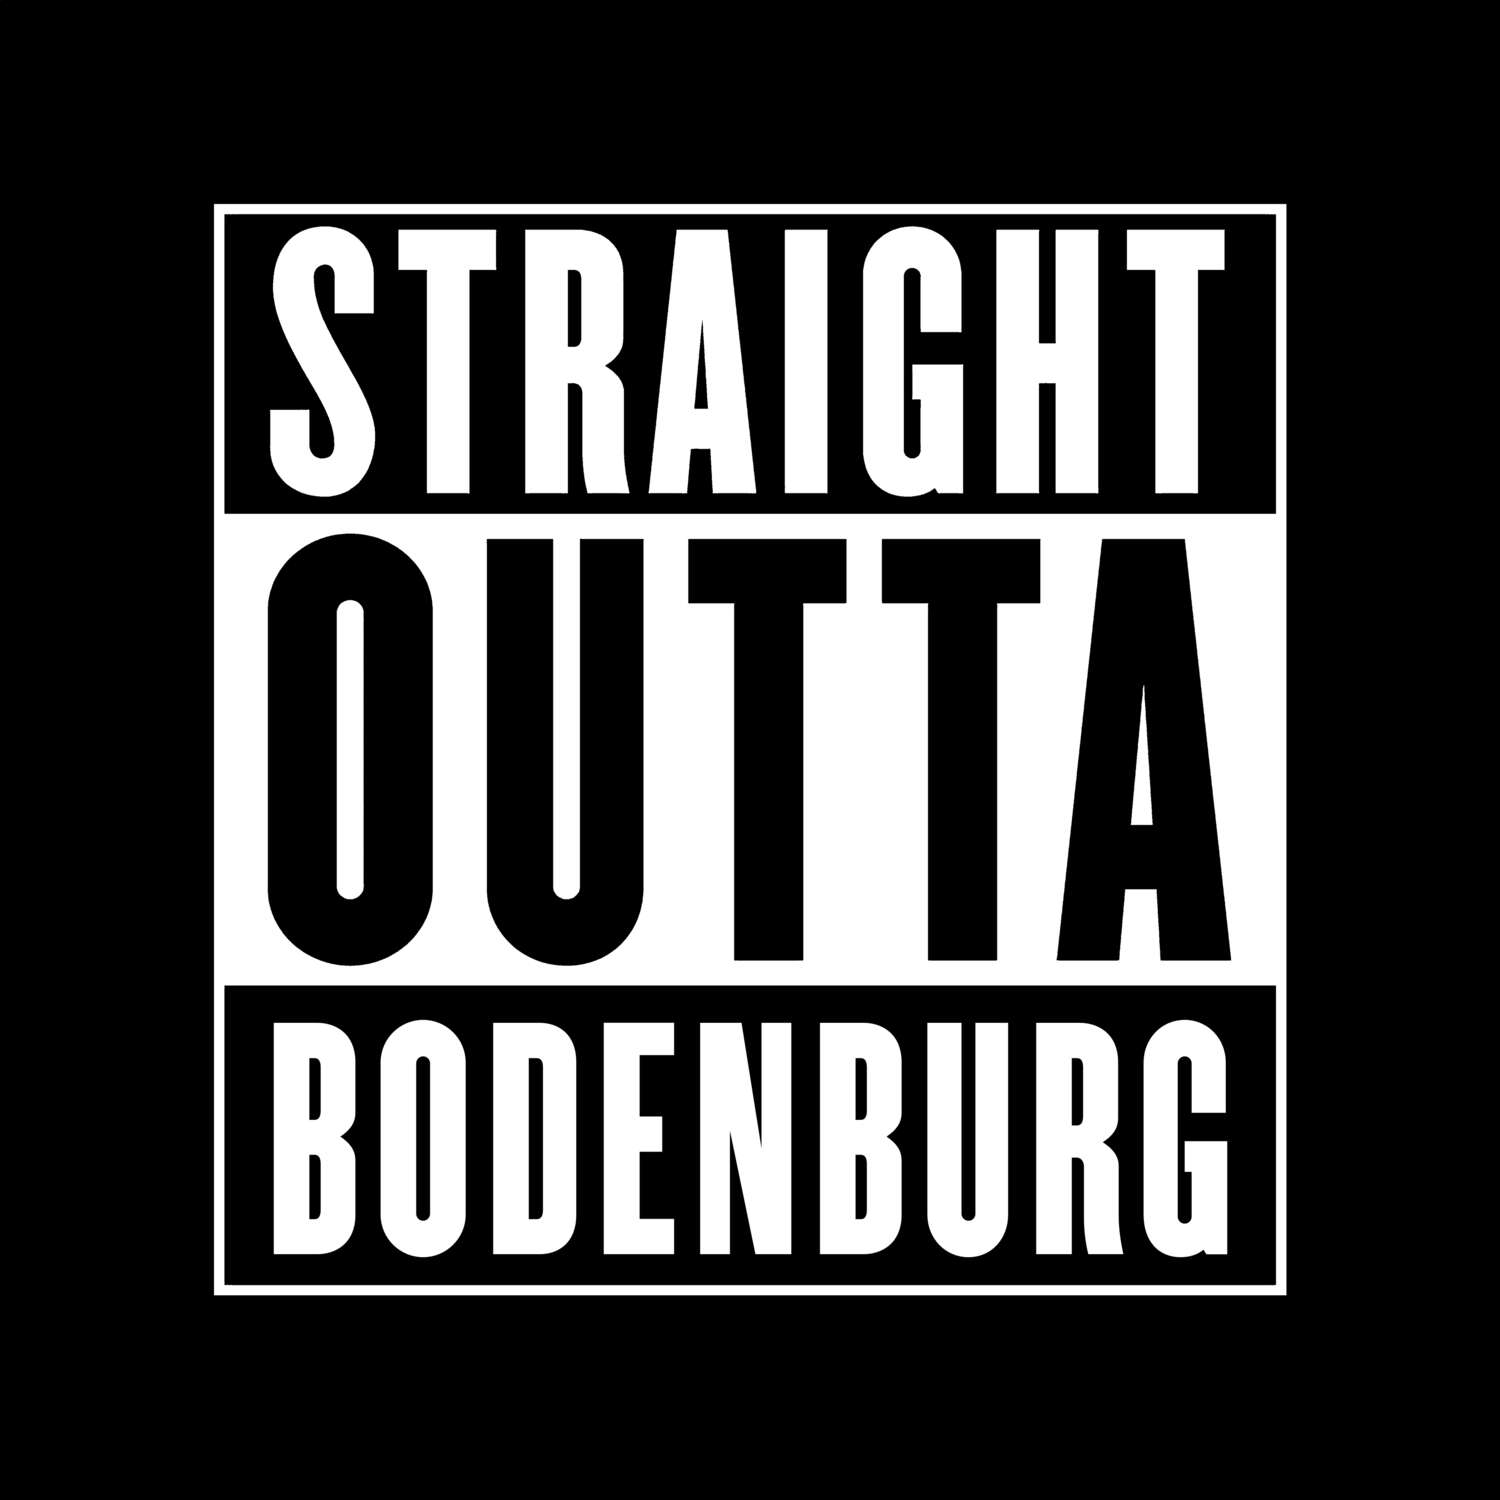 Bodenburg T-Shirt »Straight Outta«